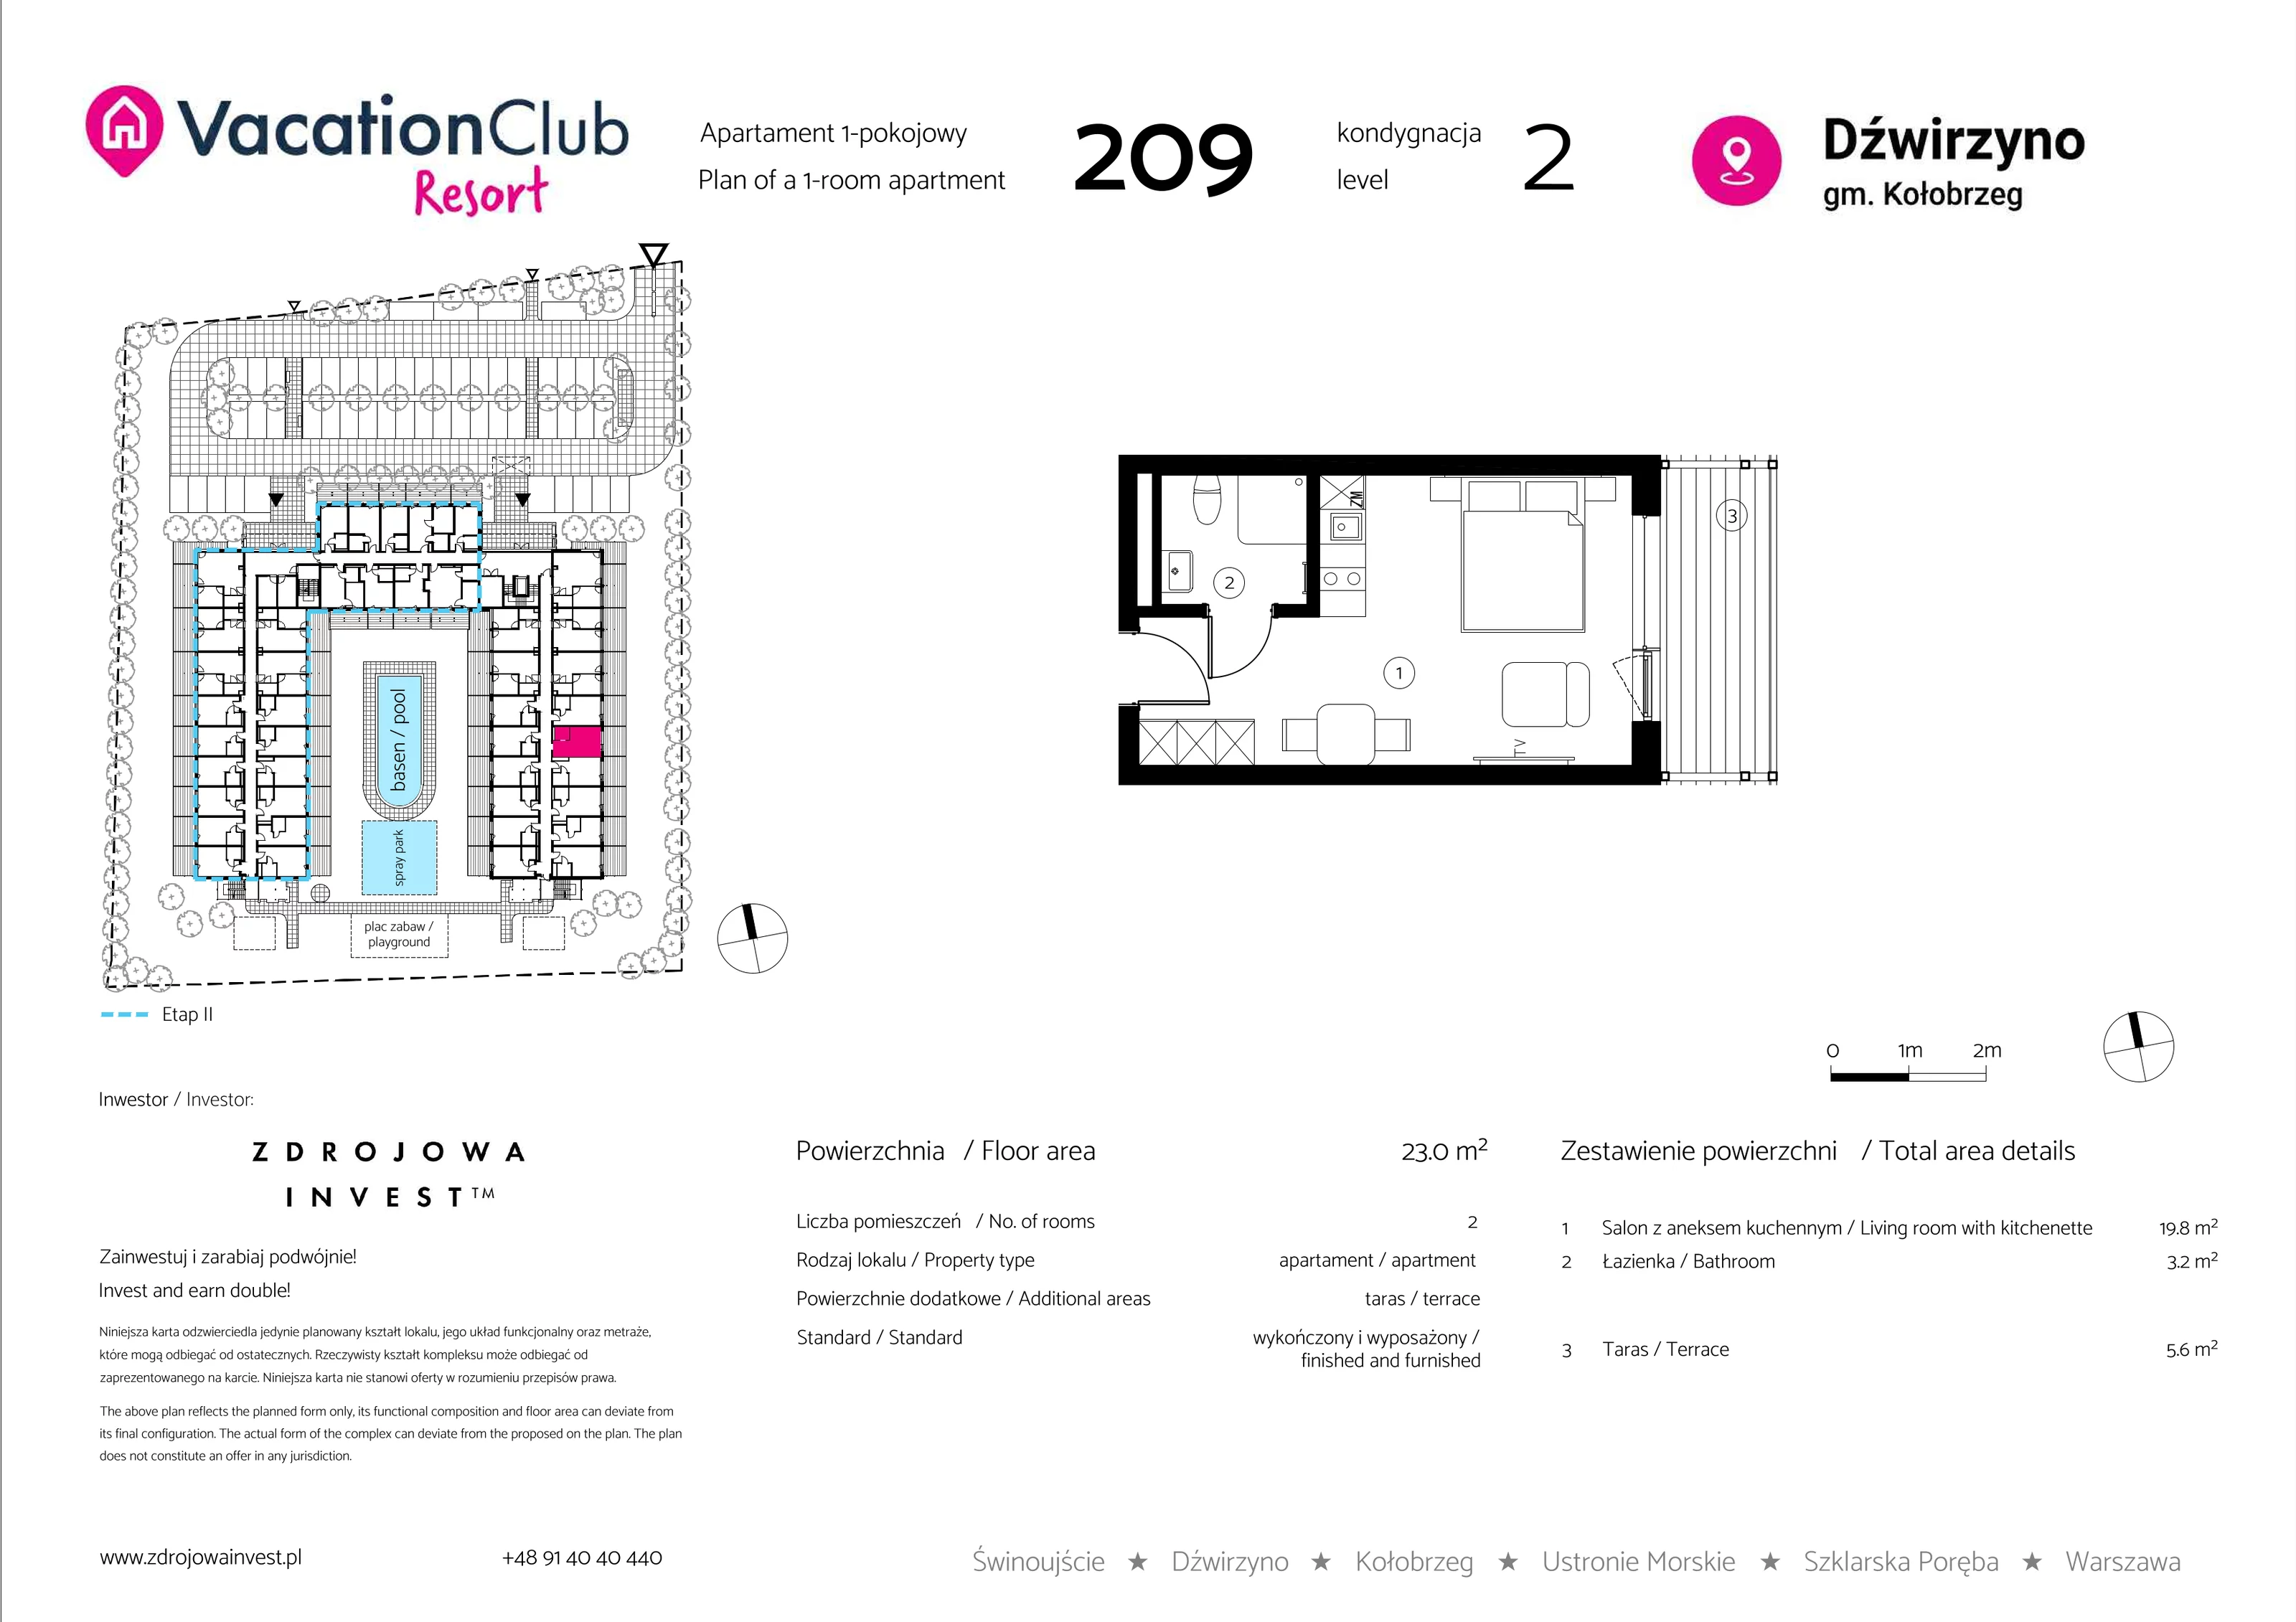 Apartament 23,00 m², piętro 1, oferta nr 209, Vacation Club Resort - apartamenty wakacyjne, Dźwirzyno, ul. Wczasowa 8